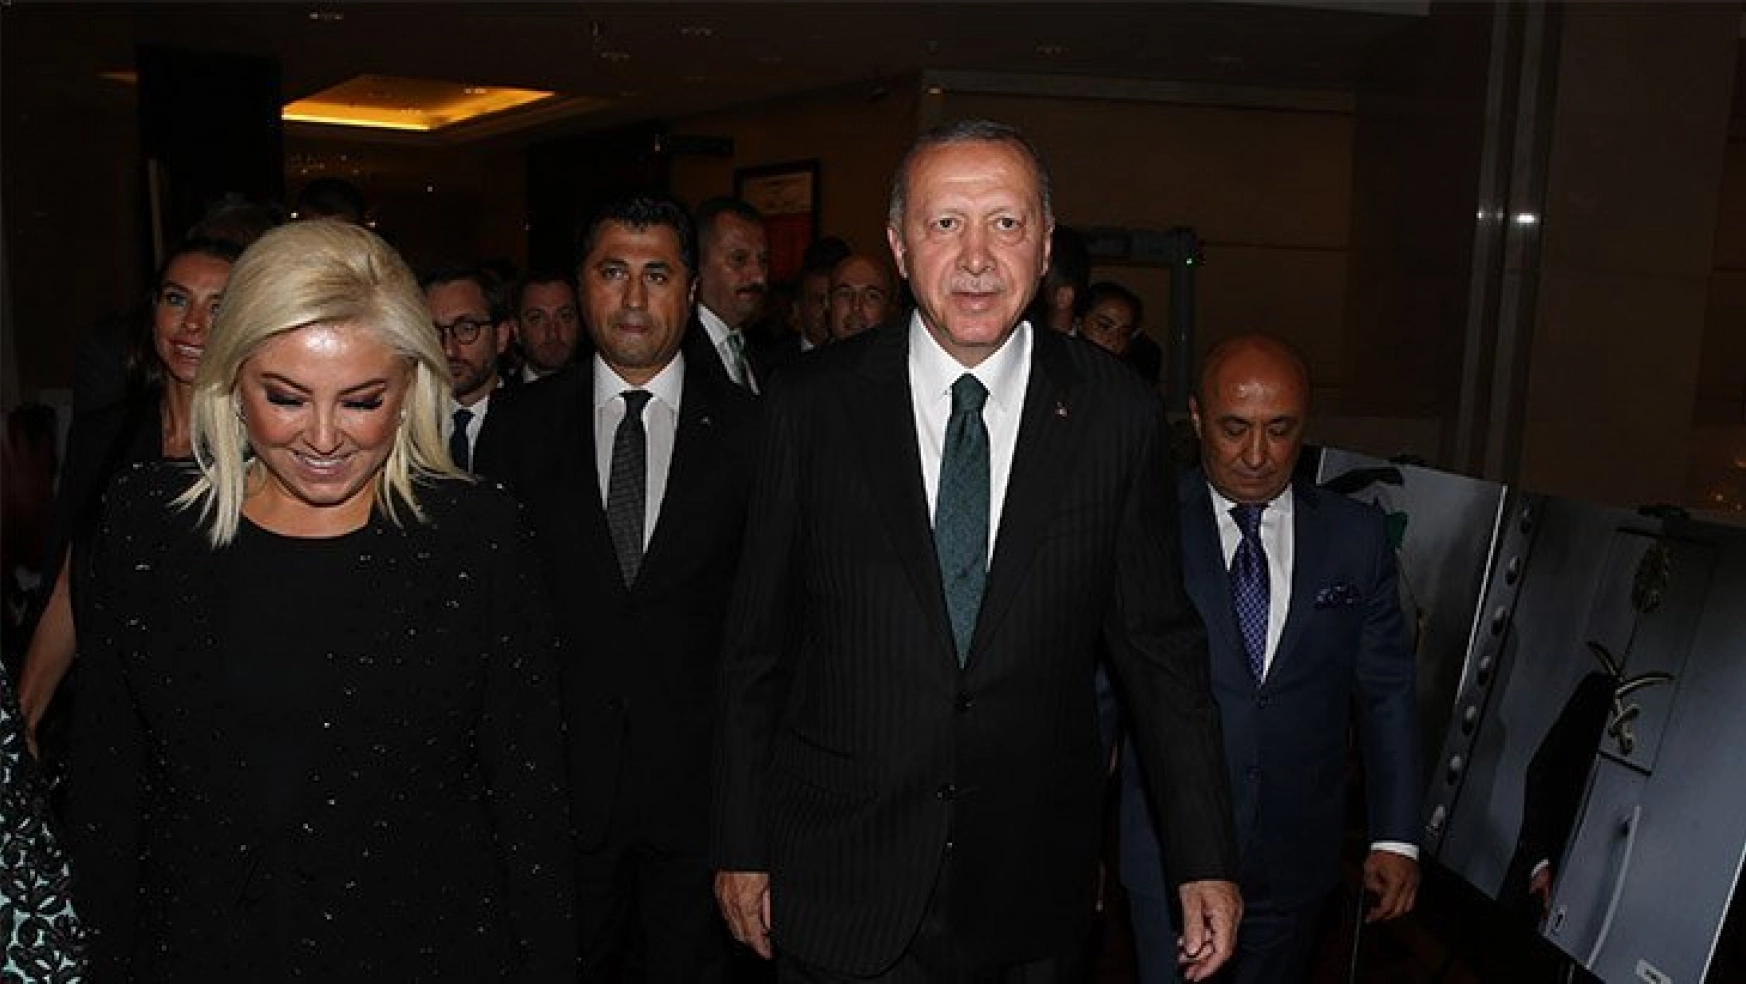 Cumhurbaşkanı Erdoğan Biz basını daha özgür, daha çoğulcu bir Türkiye arzu ediyoruz